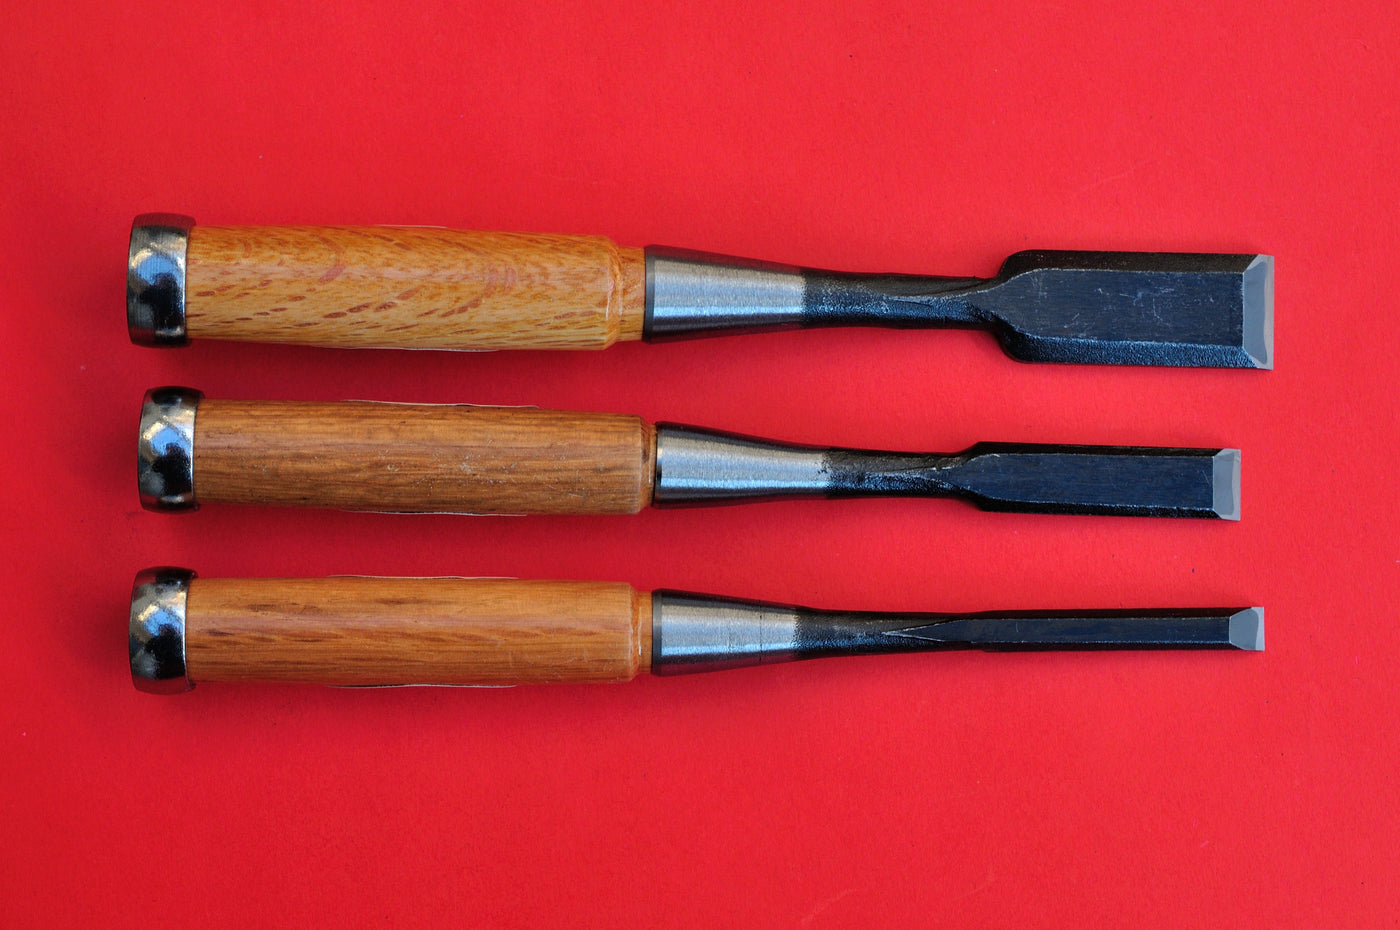 Ciseaux à bois japonais (bédanes) – Luckyfind